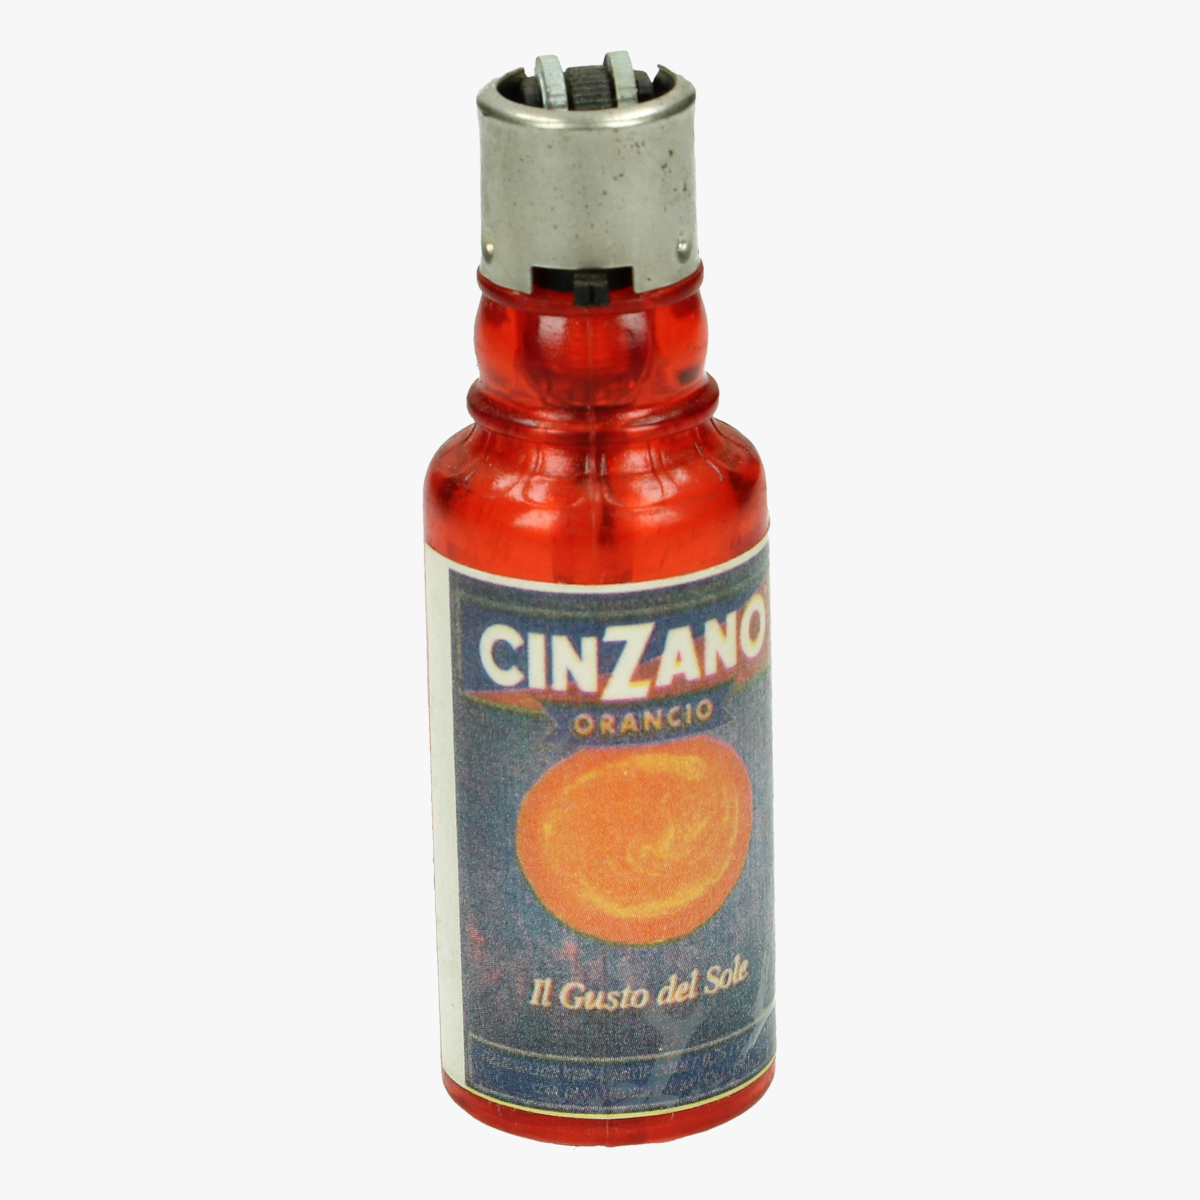 Afbeeldingen van aansteker flesje cinzano